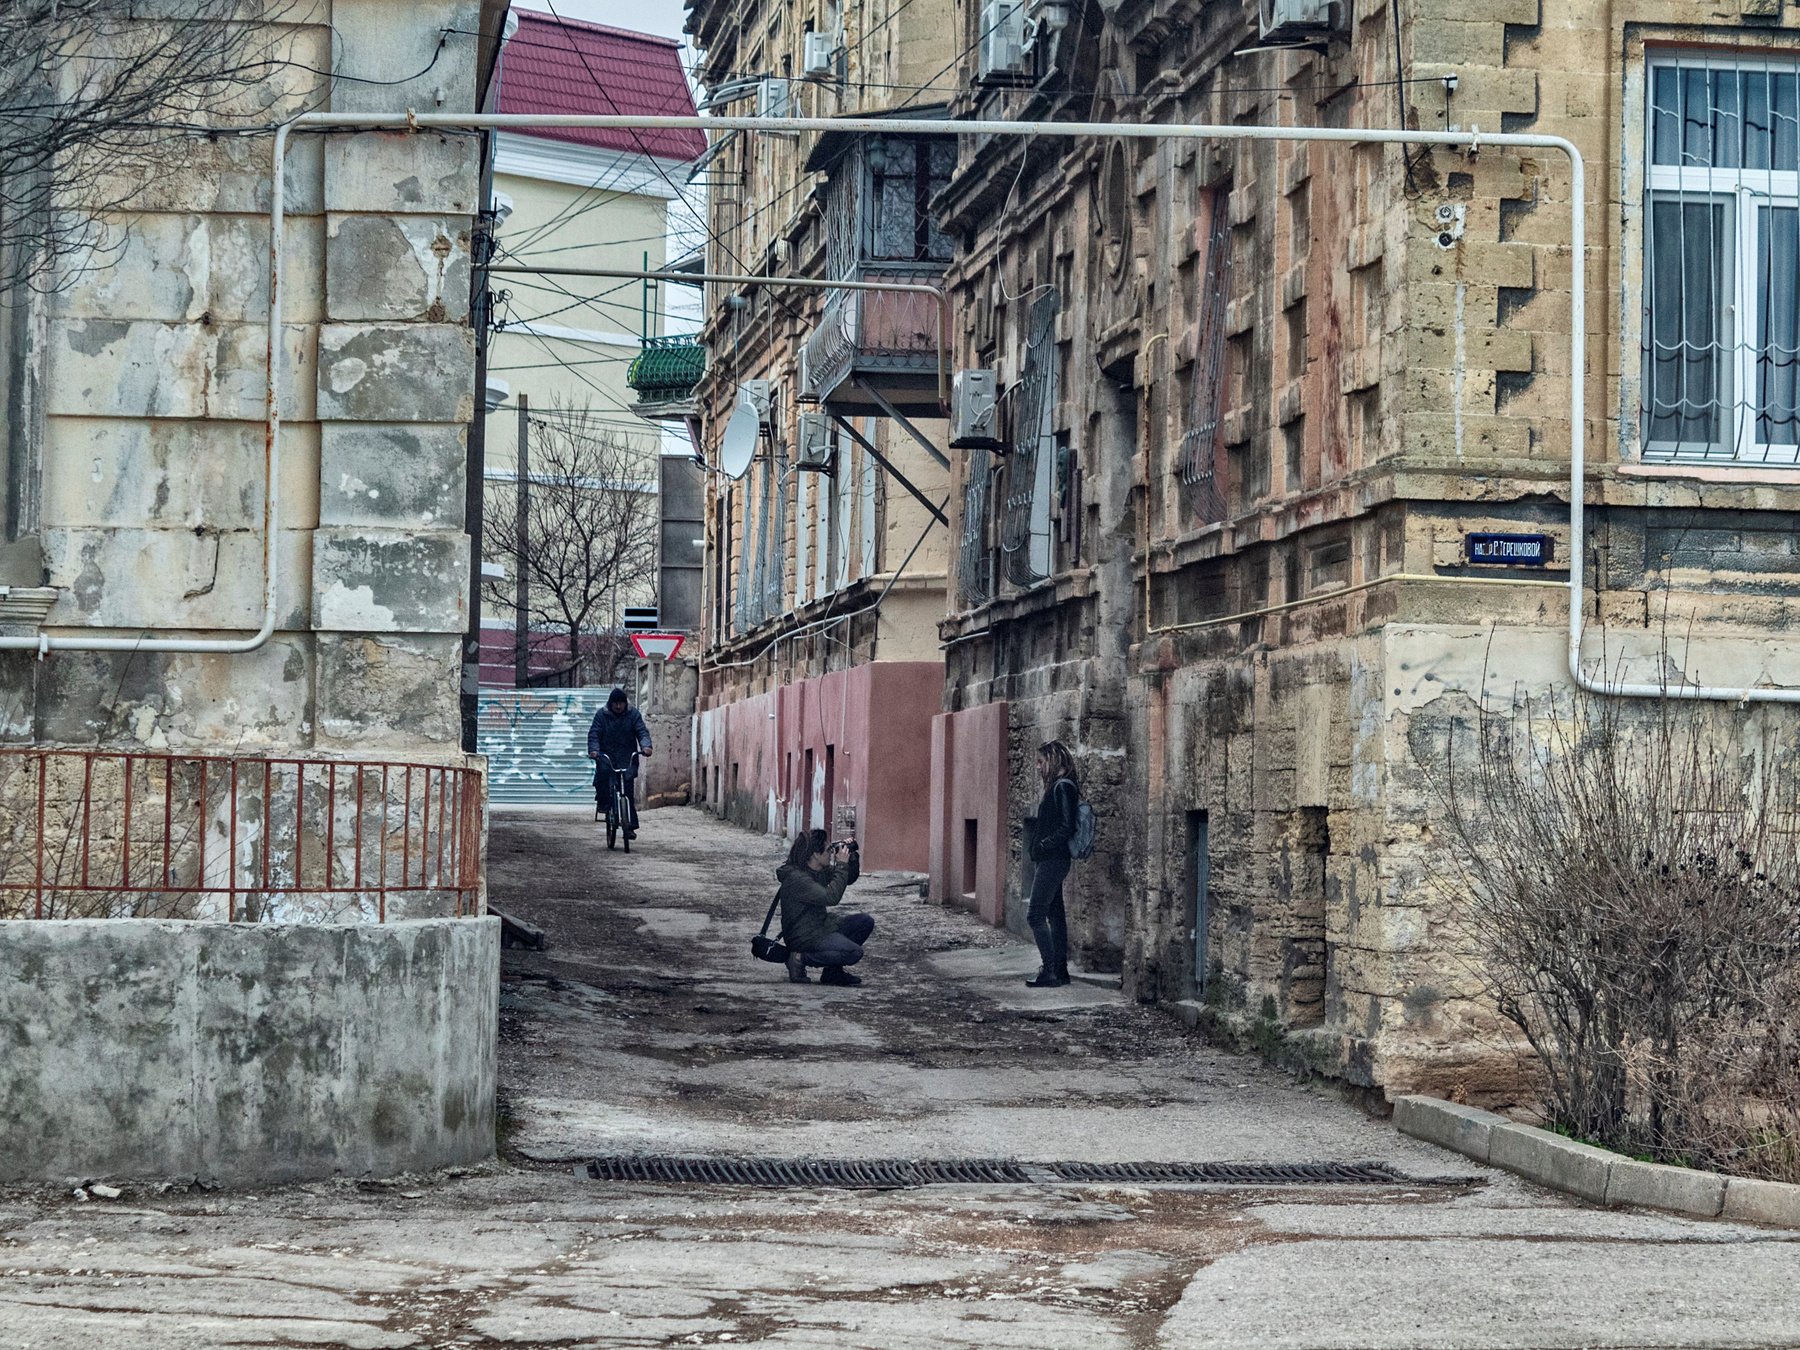 крымская фоточка #14 россия крым евпатория город уличное фото архитектура винтаж люди фотографы